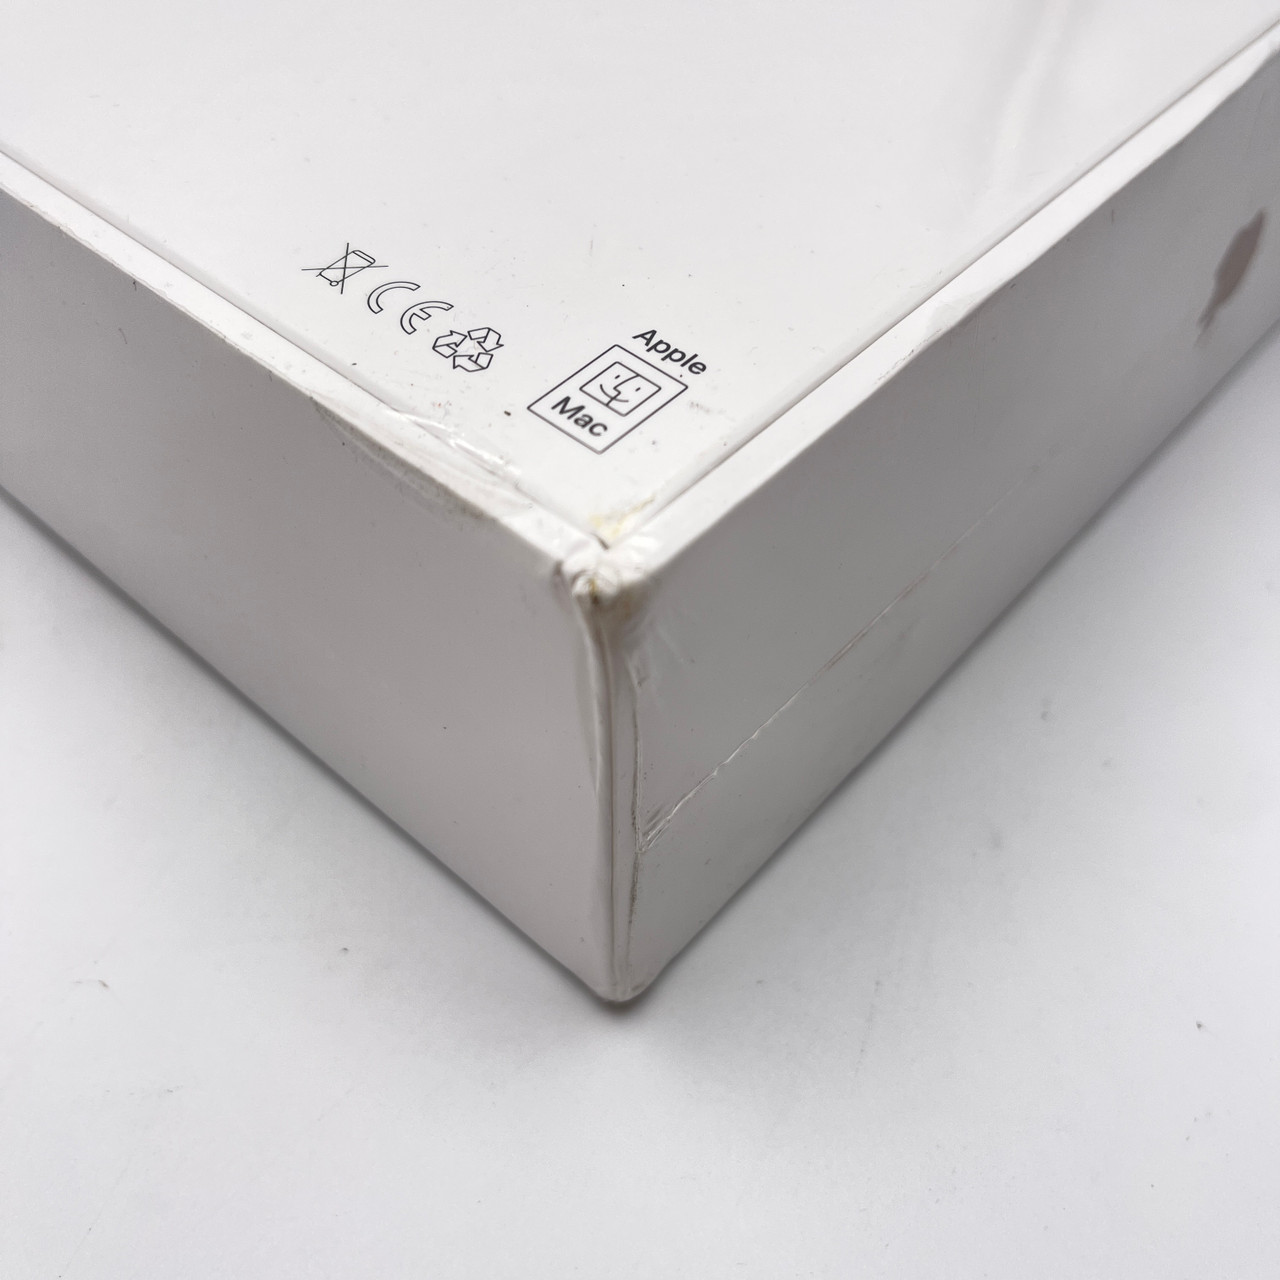 New - Apple MacBook Air 2020 Gold - Core i3 10th Gen, 8GB RAM, 256GB SSD